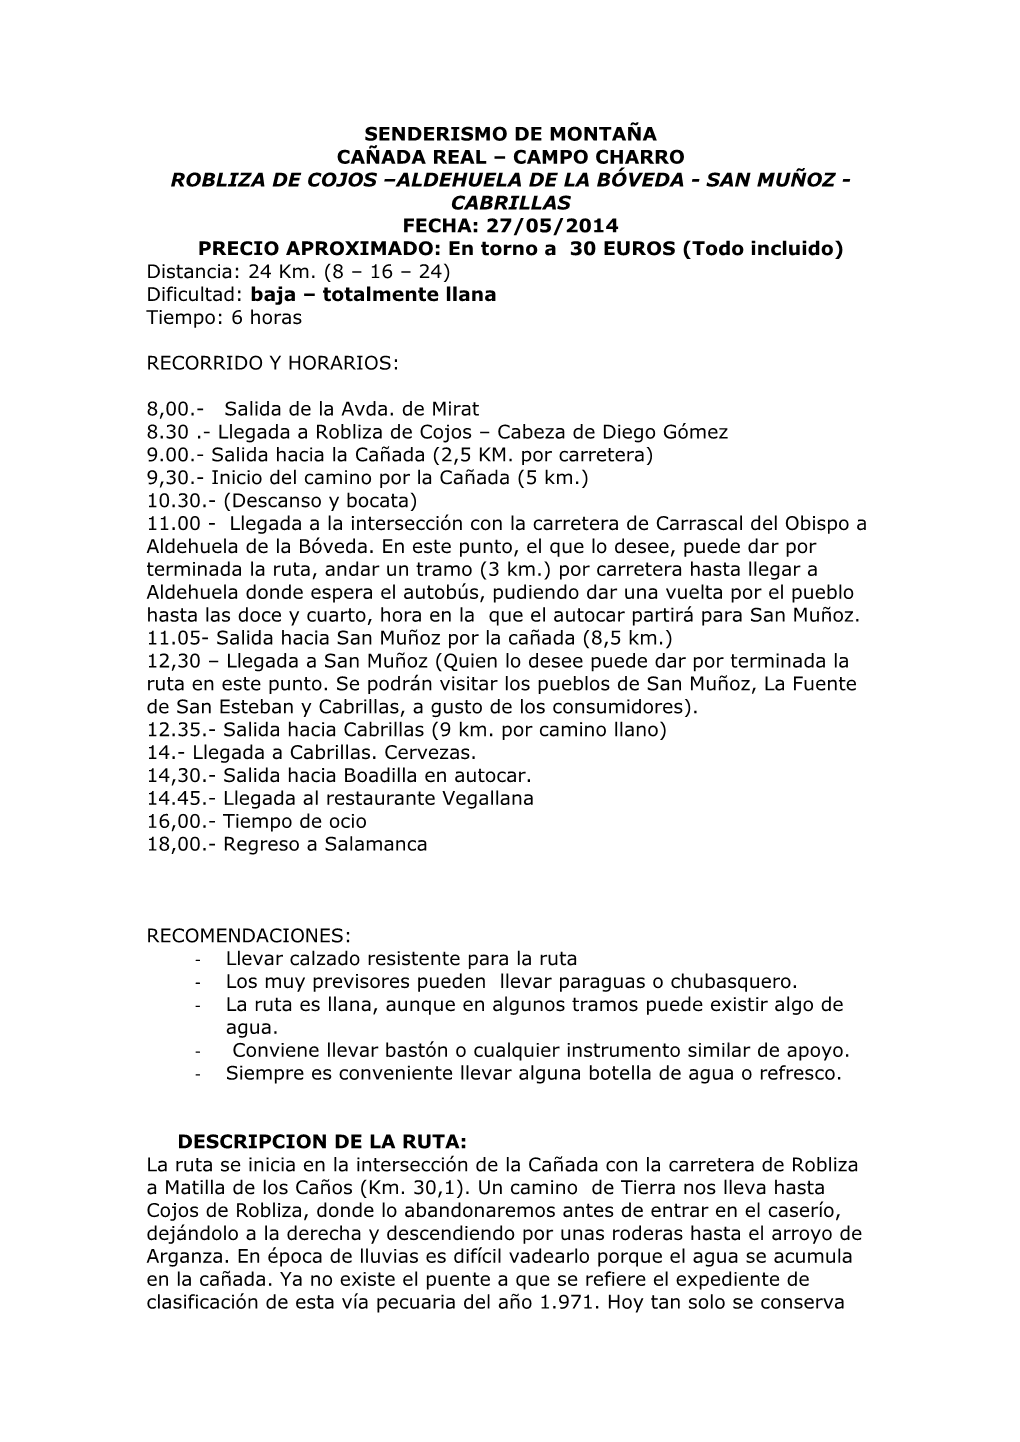 ALDEHUELA DE LA BÓVEDA - SAN MUÑOZ - CABRILLAS FECHA: 27/05/2014 PRECIO APROXIMADO: En Torno a 30 EUROS (Todo Incluido) Distancia: 24 Km